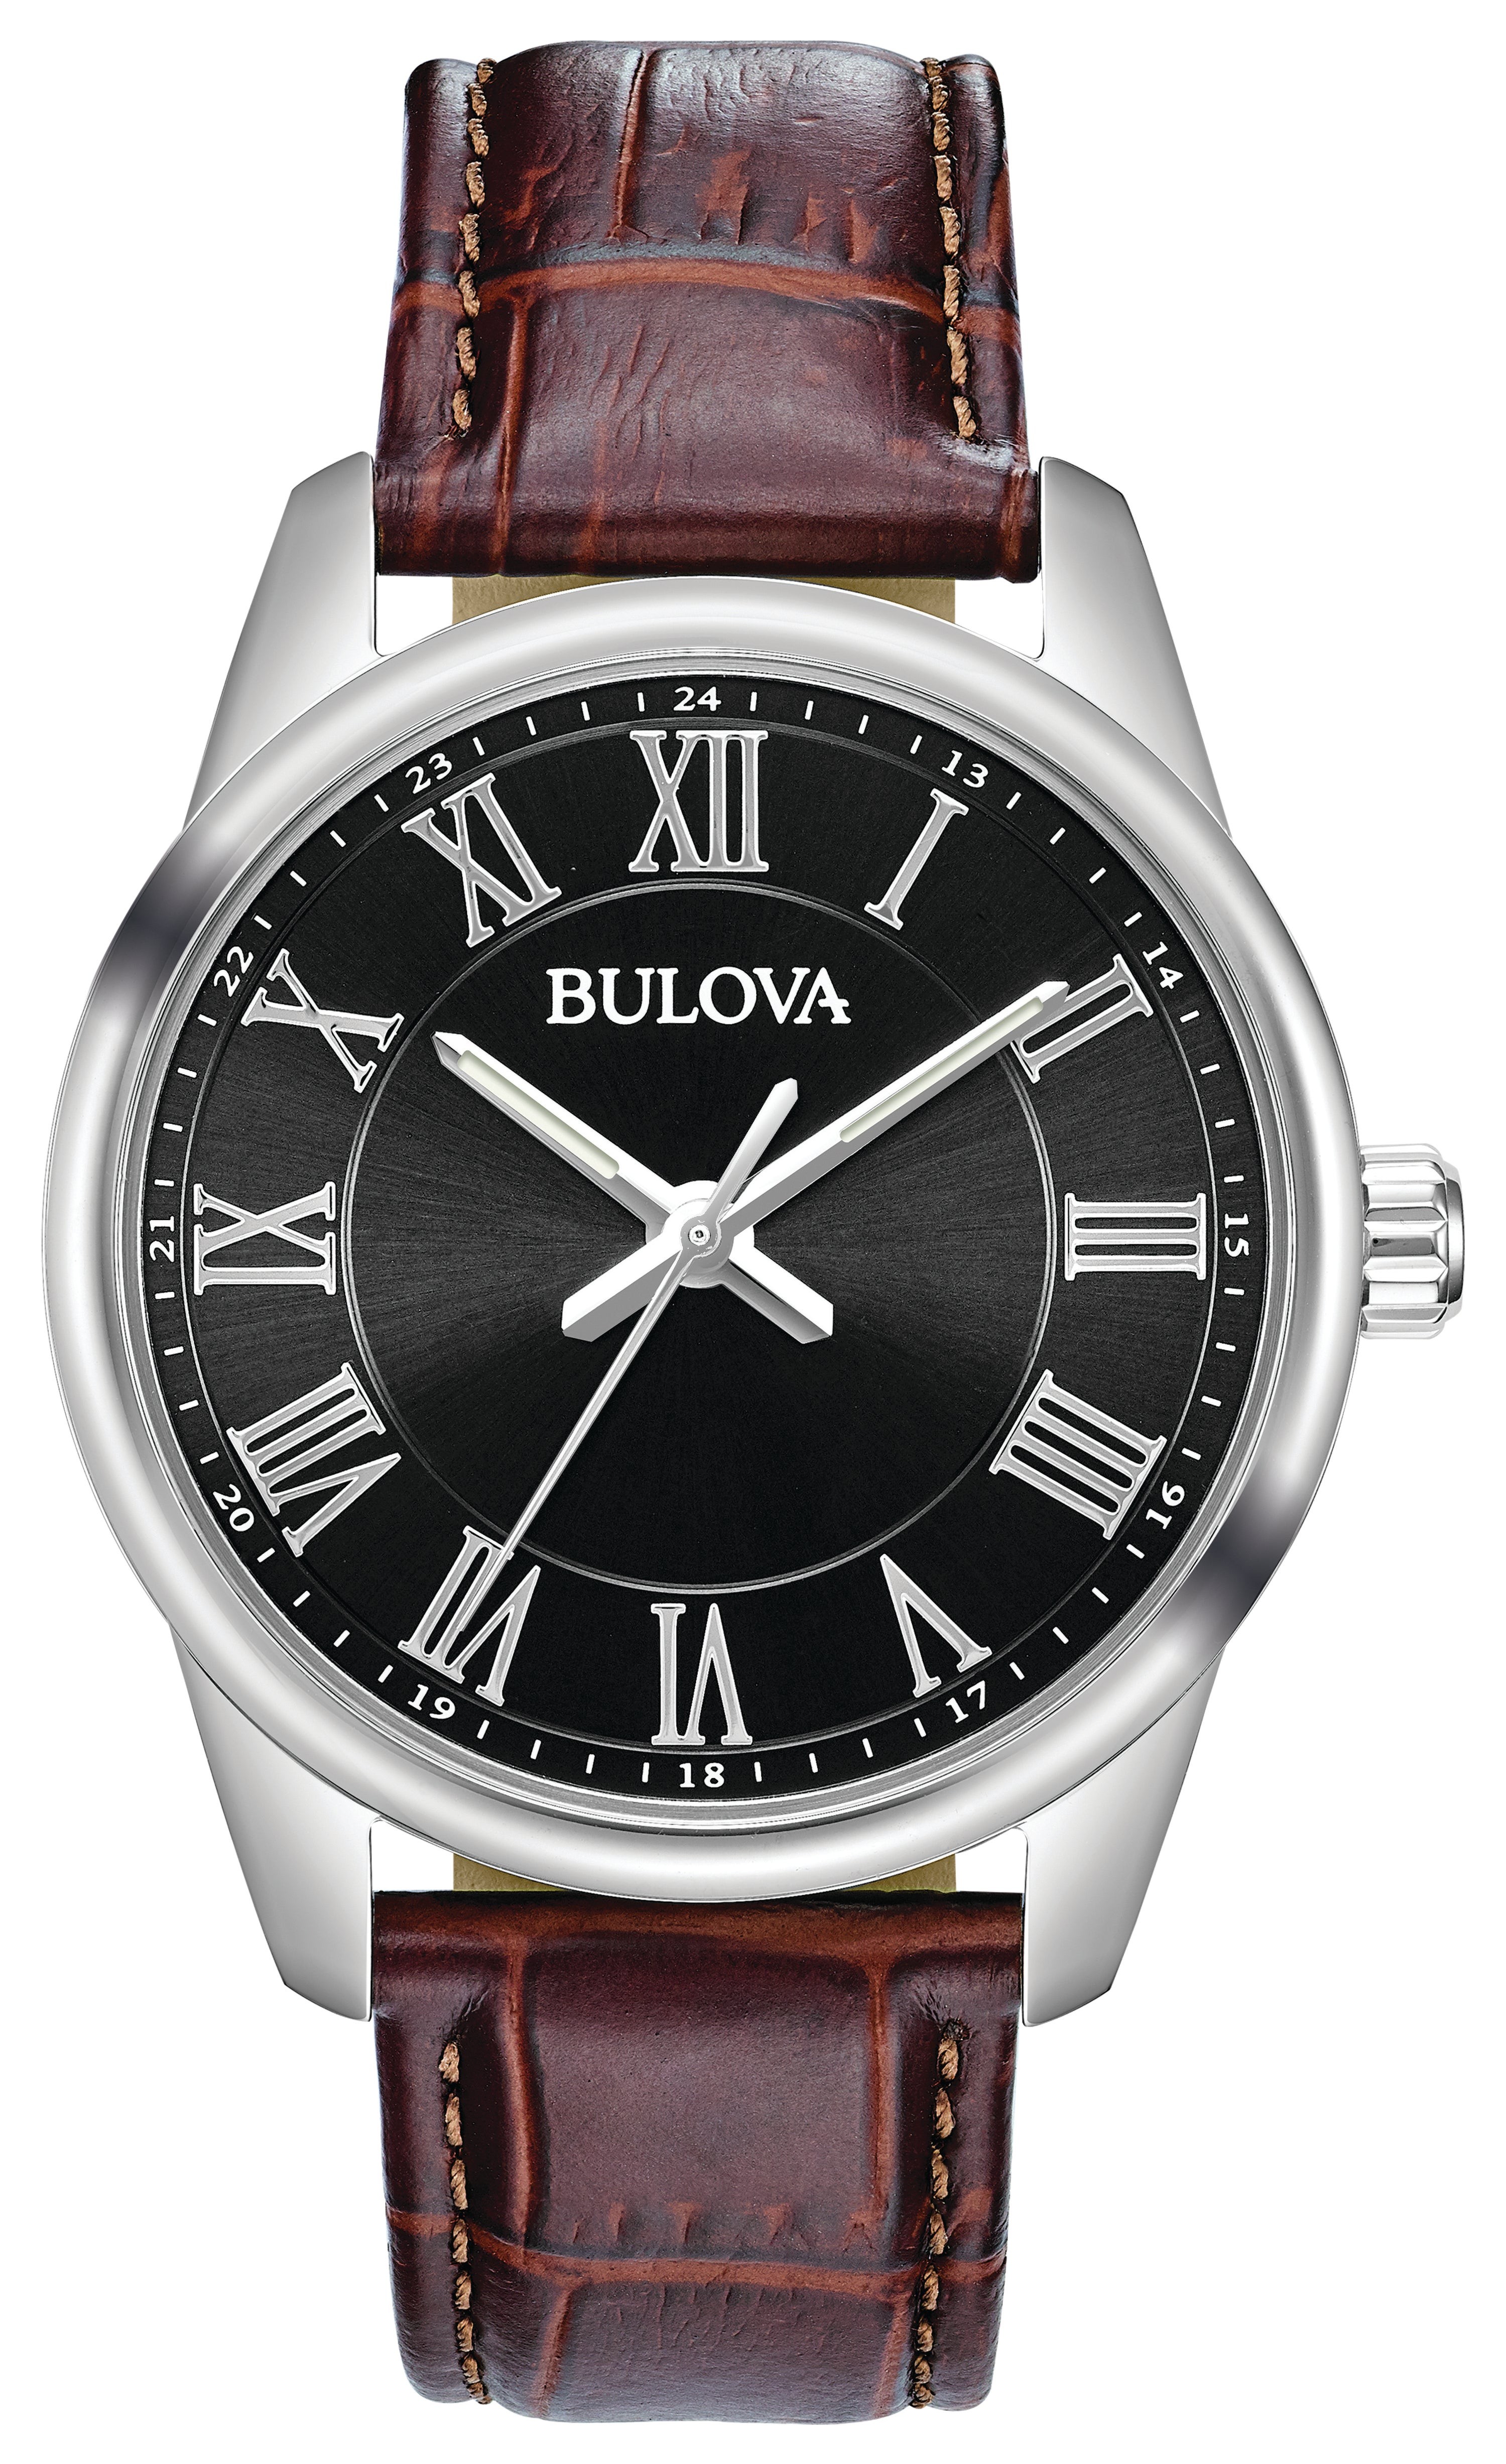 Men's Quartz Brown Leather Strap Watch, Black Dial